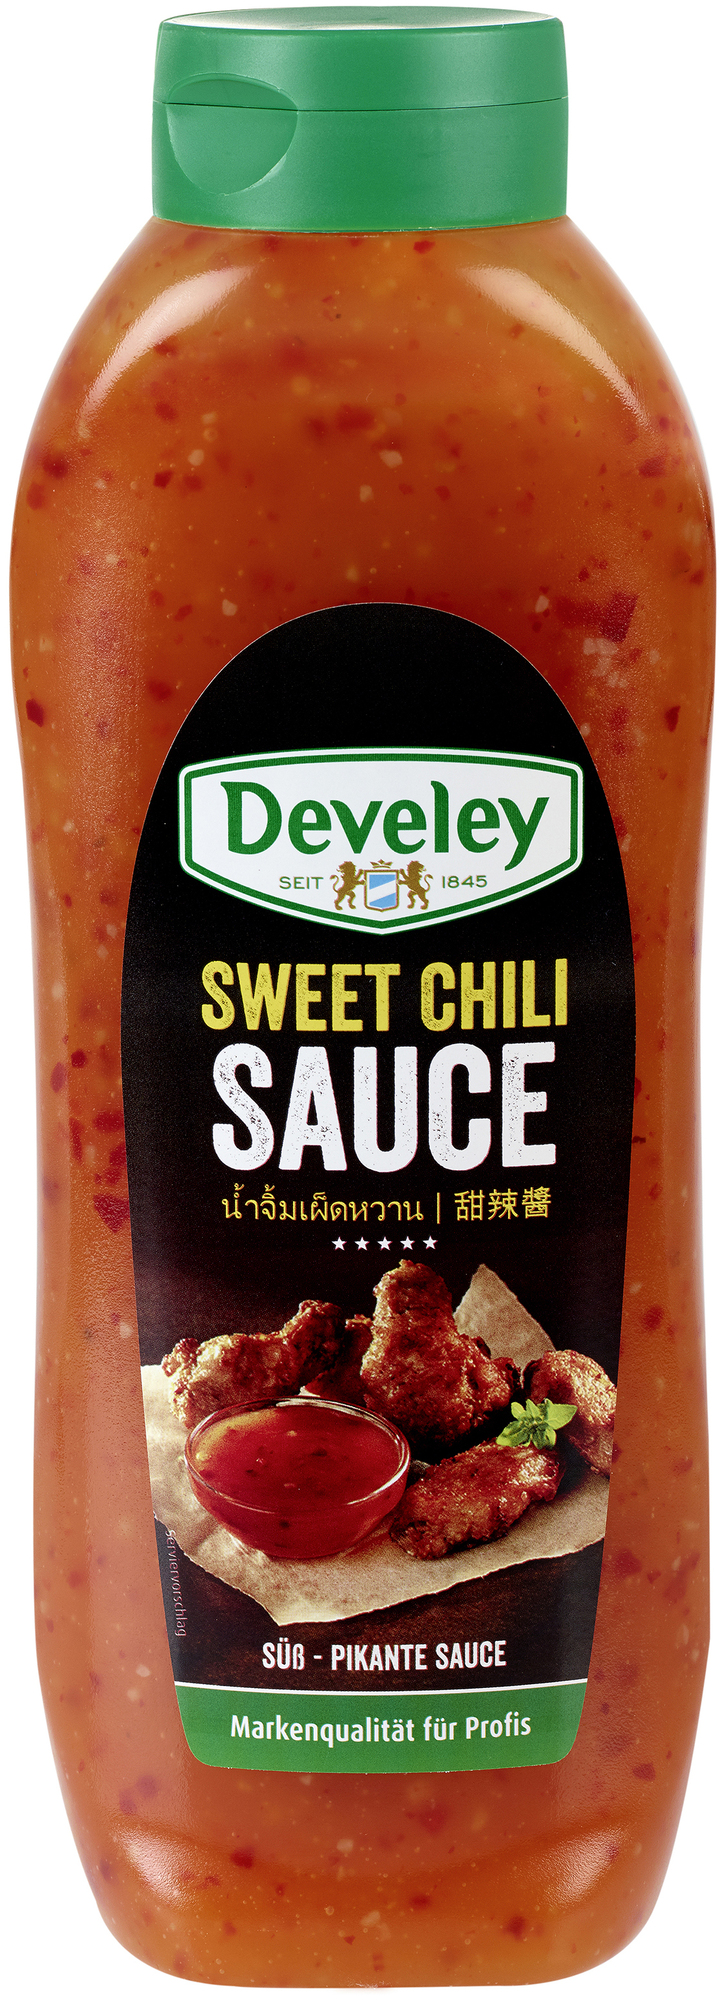 Sweet Chili Sauce 875ml